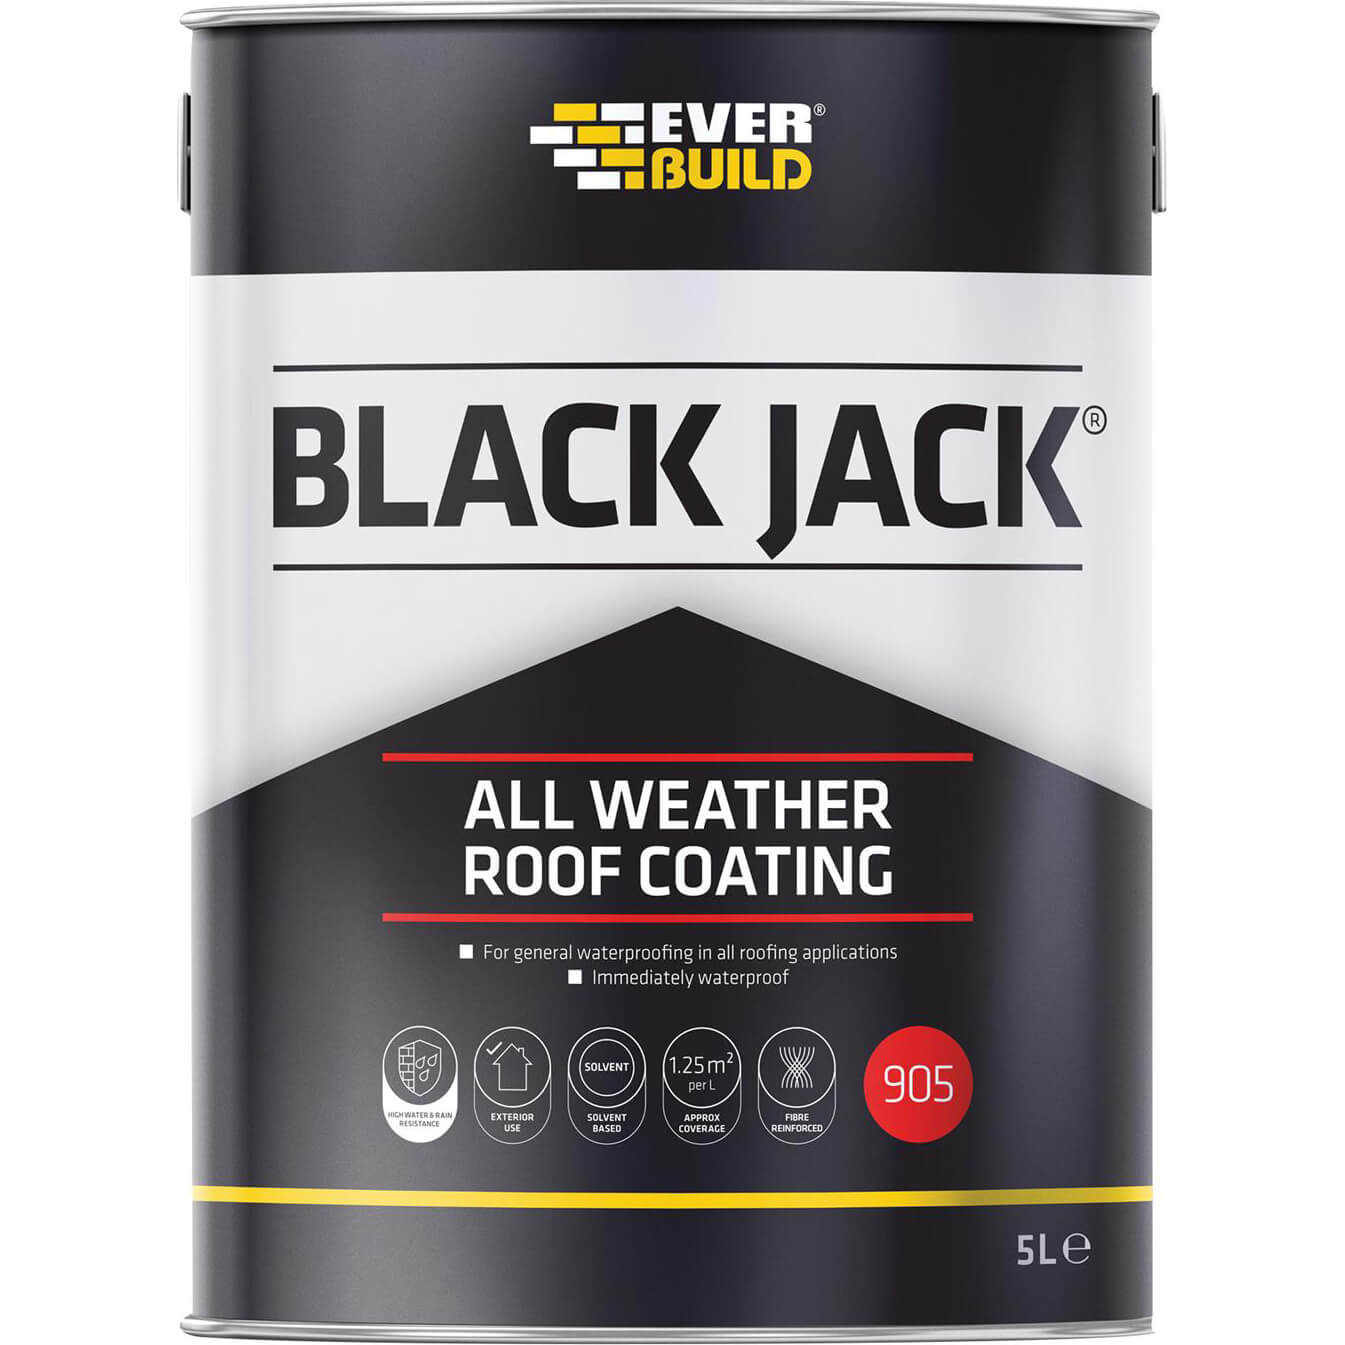 Image of Everbuild Black Jack 905 All Weather Roof Coating 5l